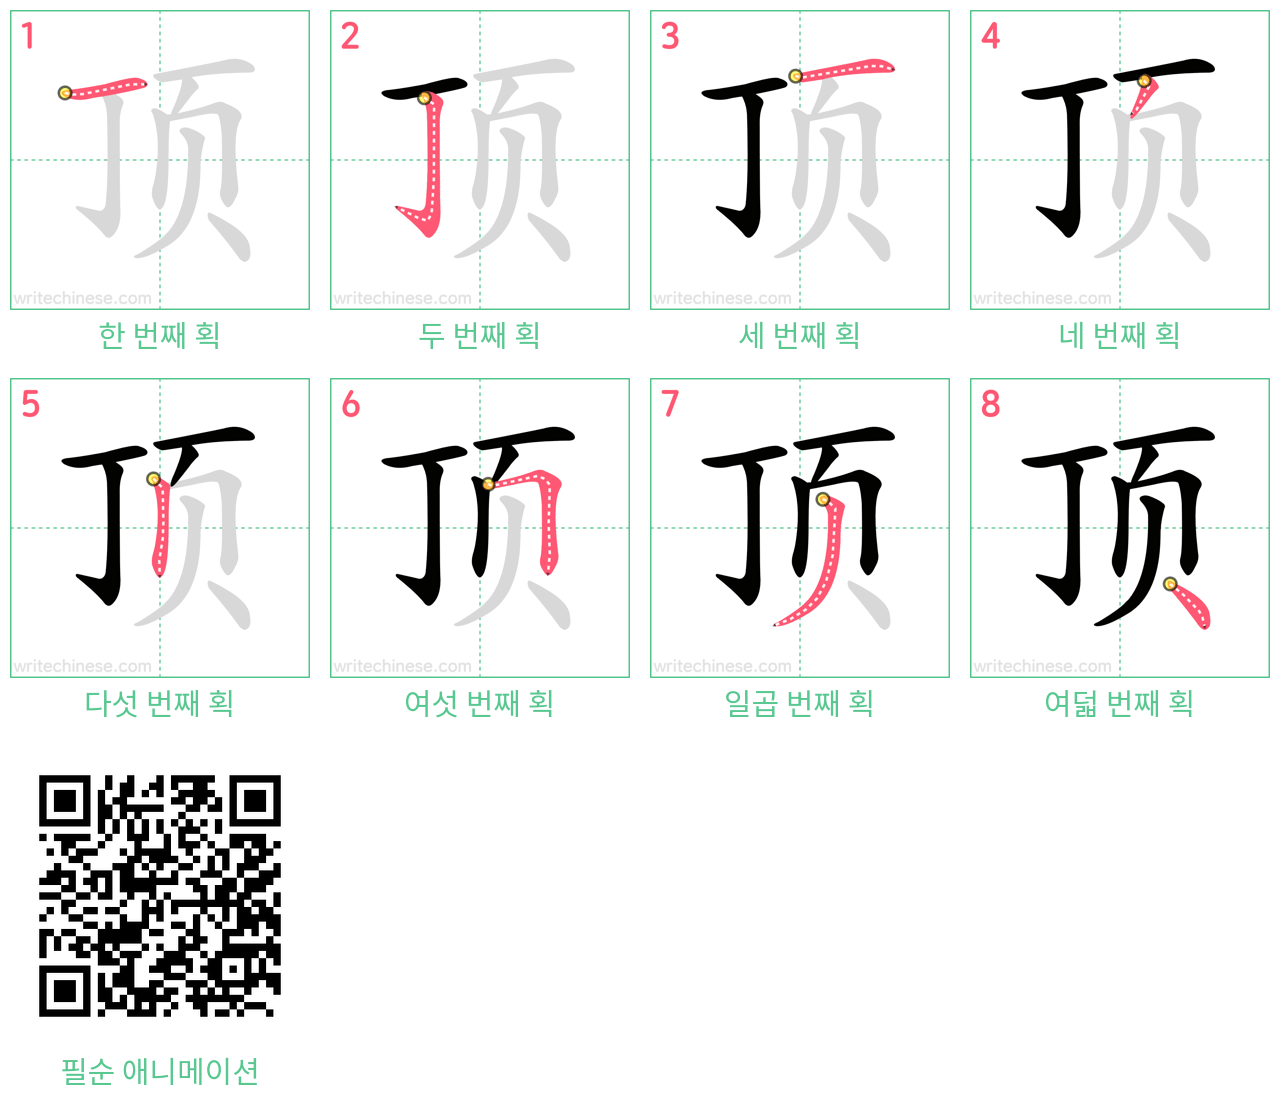 顶 step-by-step stroke order diagrams